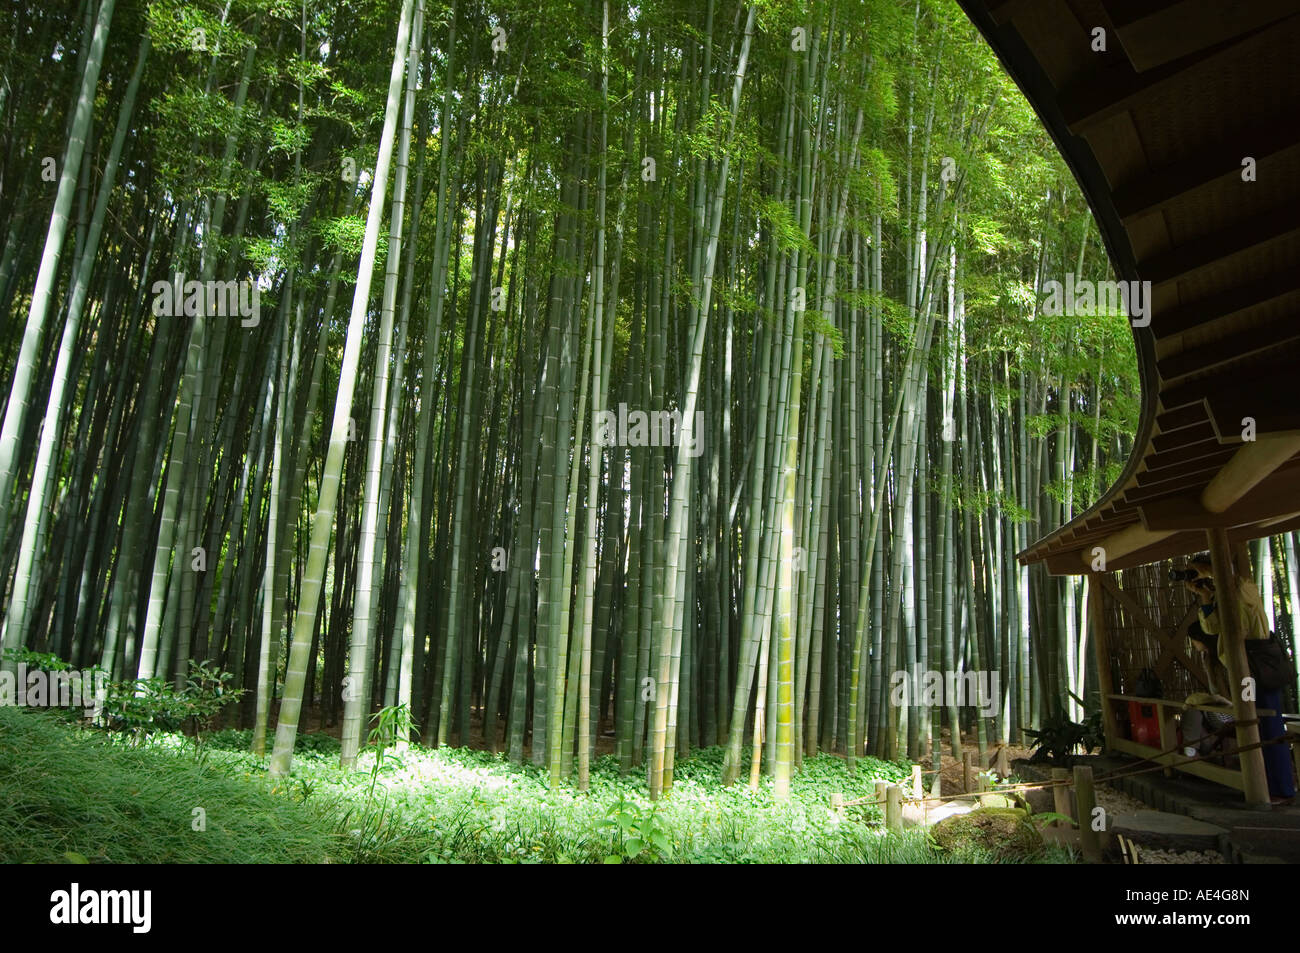 Bamboo forest, Hokokuji temple garden, Kamakura, Kanagawa prefecture, Japan, Asia Stock Photo